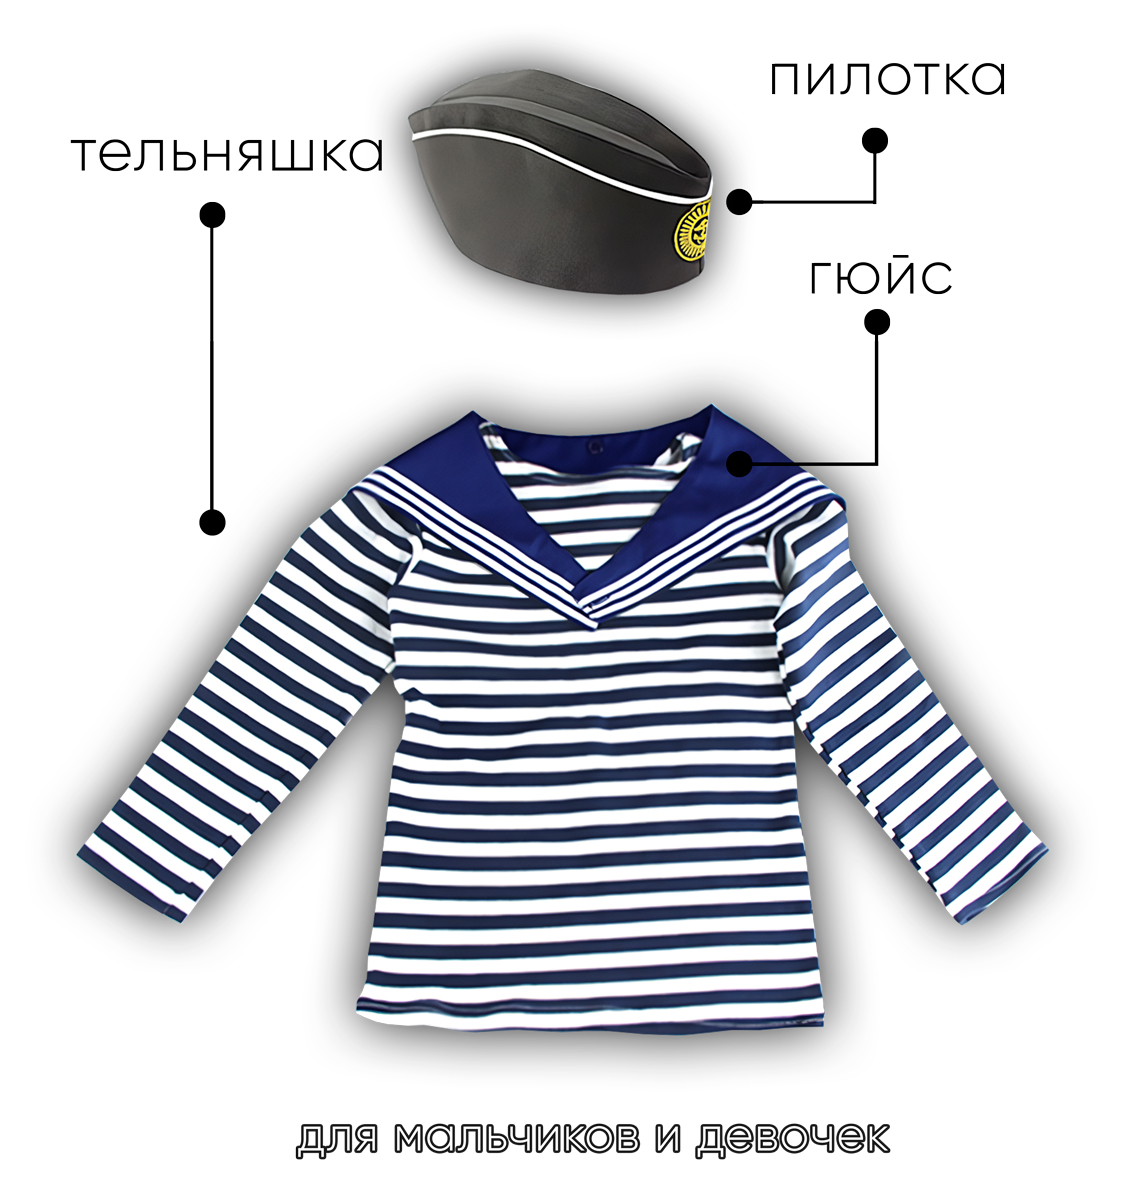 Детский набор матроса для утренника (тельняшка: 38 размер, пилотка детская: 56 размер (на рост 128-134, до 9 лет) и гюйс детский синий)